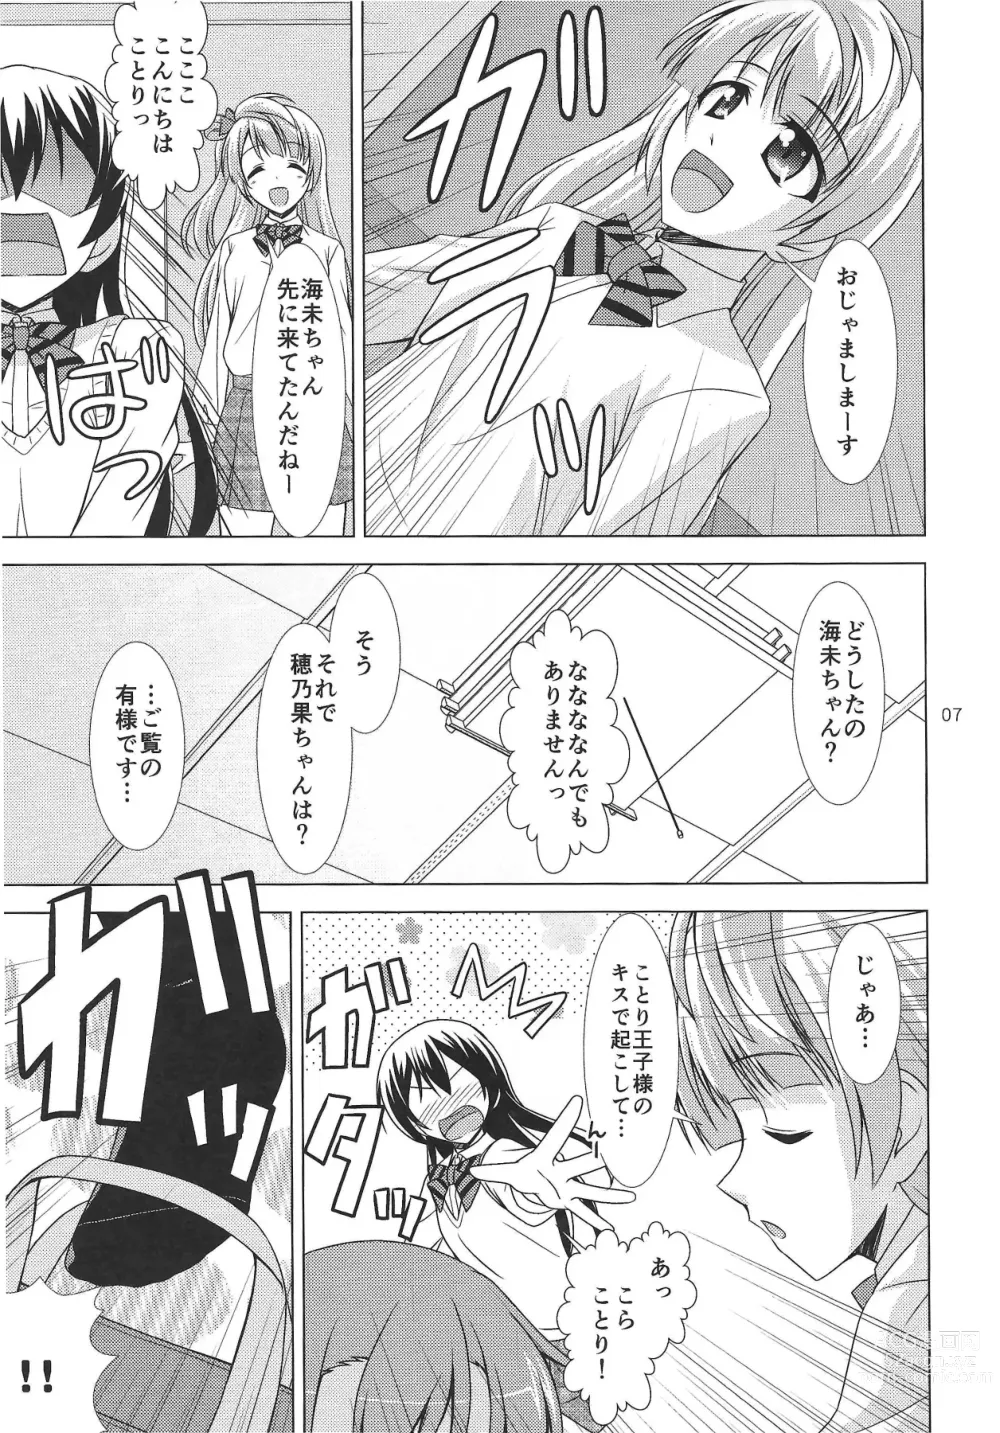 Page 6 of doujinshi ZUTTO!